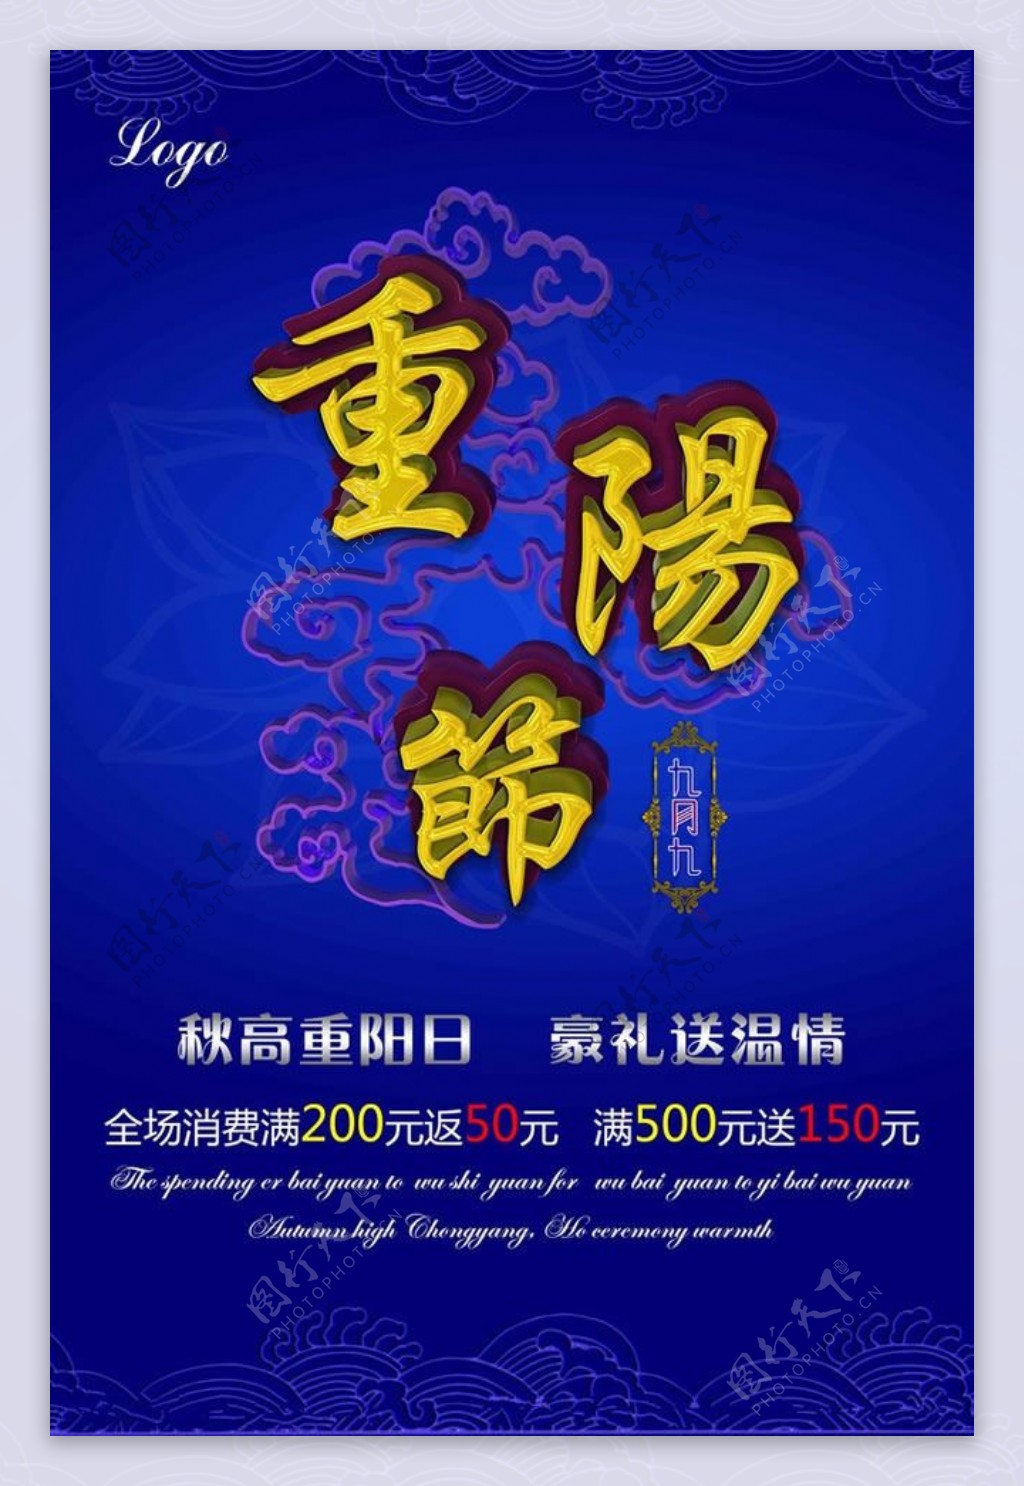 九月九日重阳节商场促销海报PSD素材